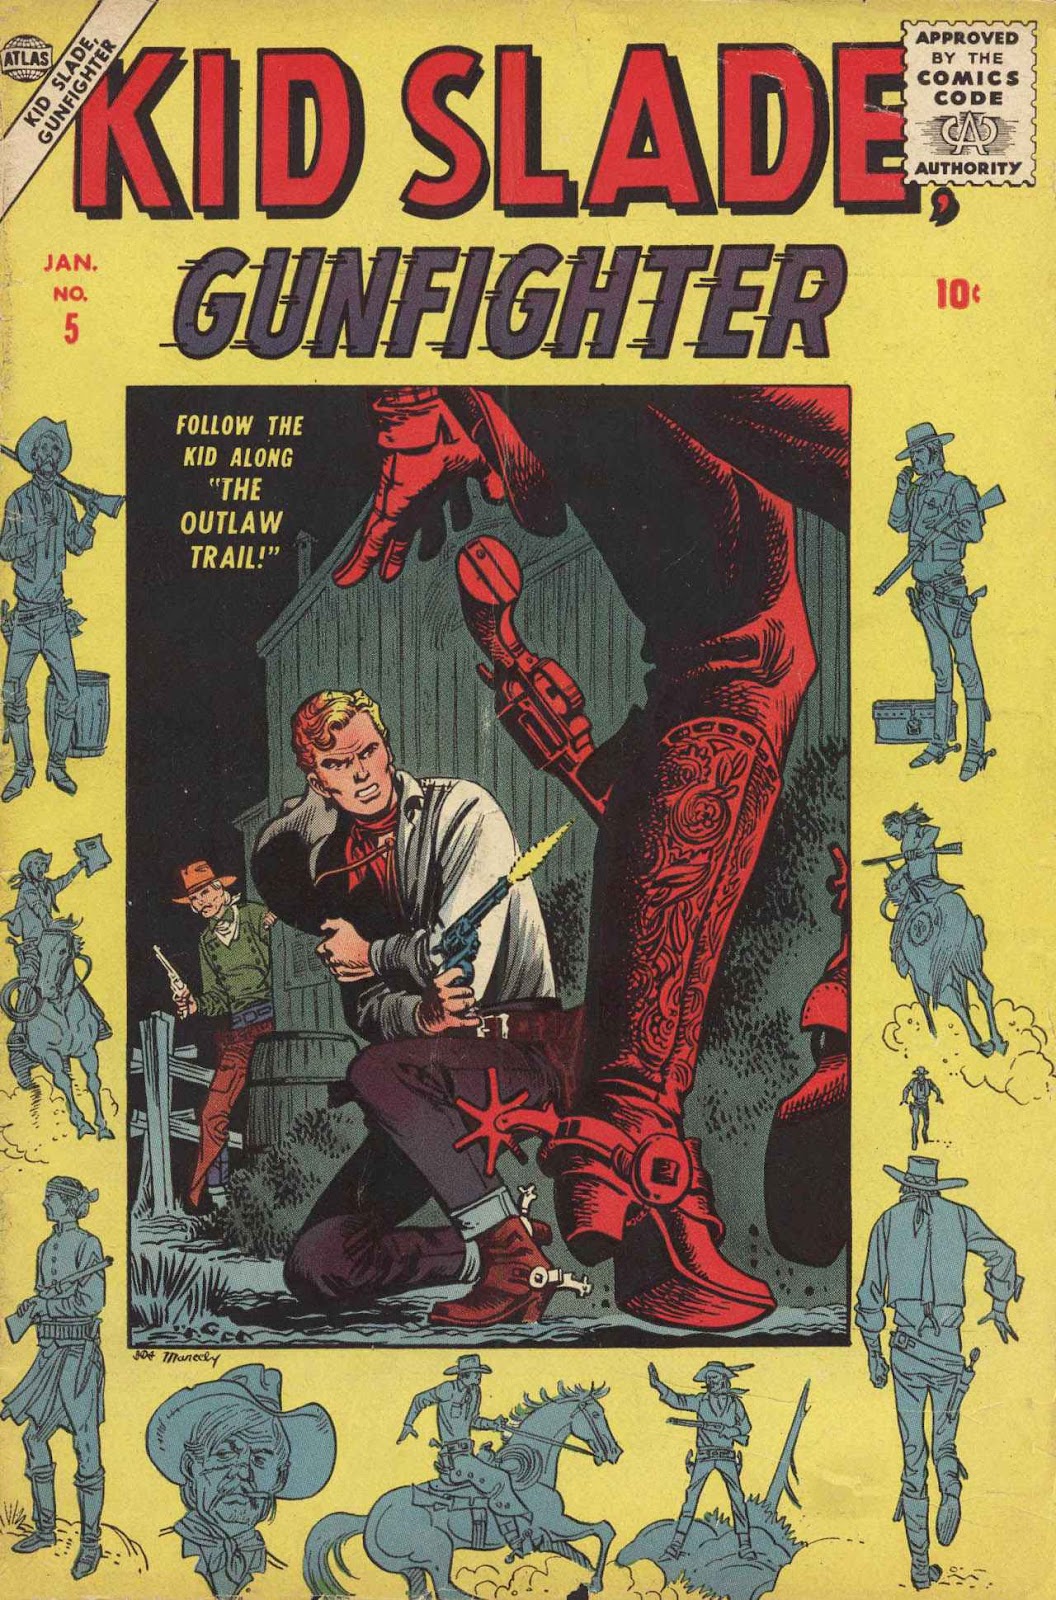 Kid Slade, Gunfighter issue 5 - Page 1